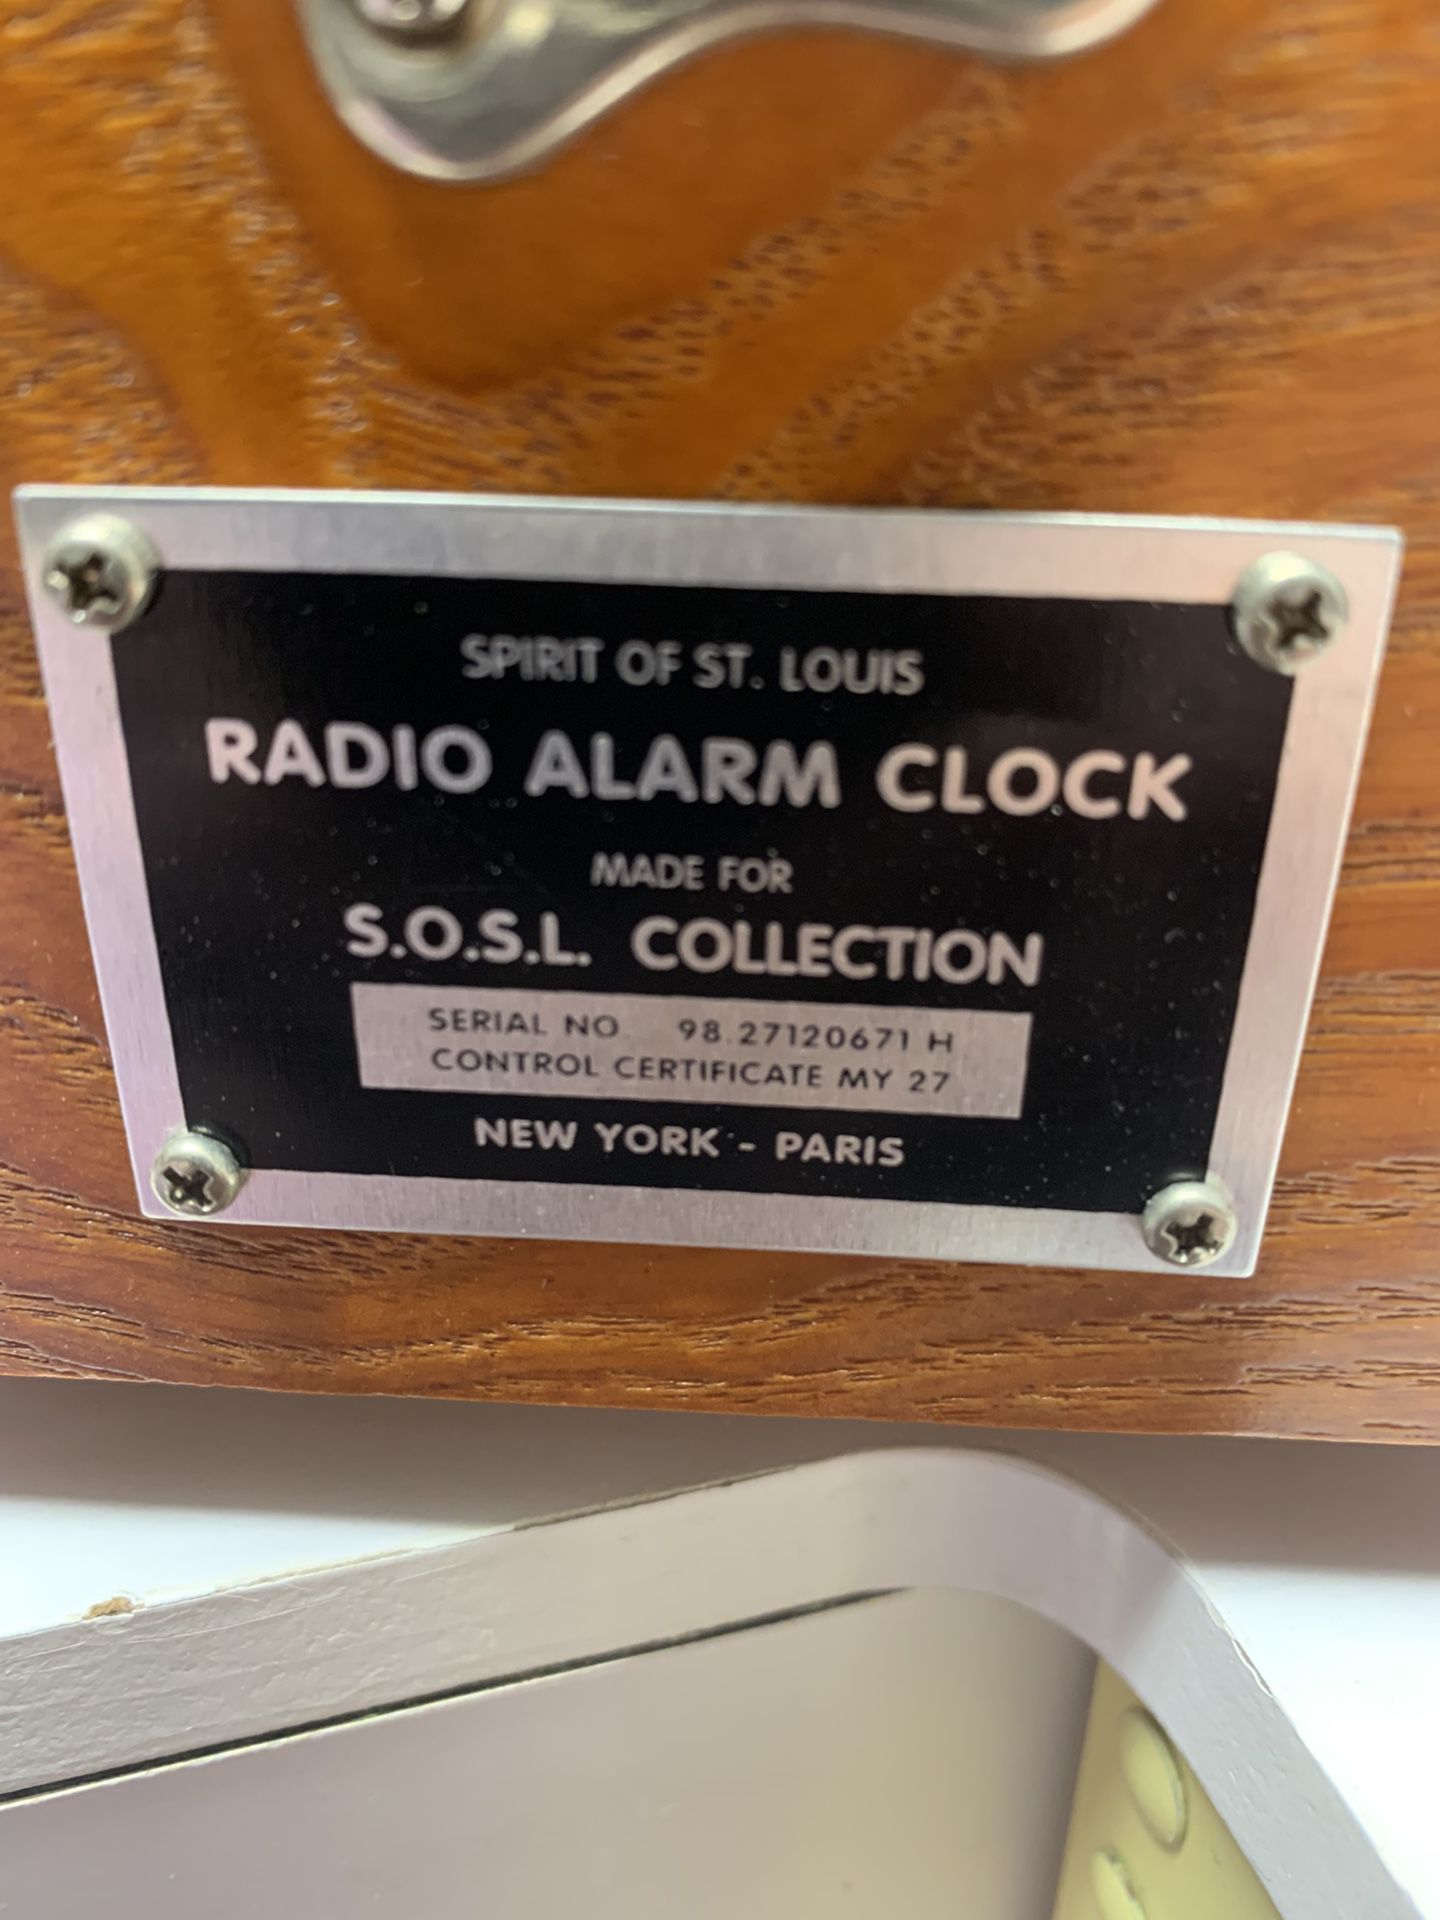 Spirit of St. Louis alarm clock radio